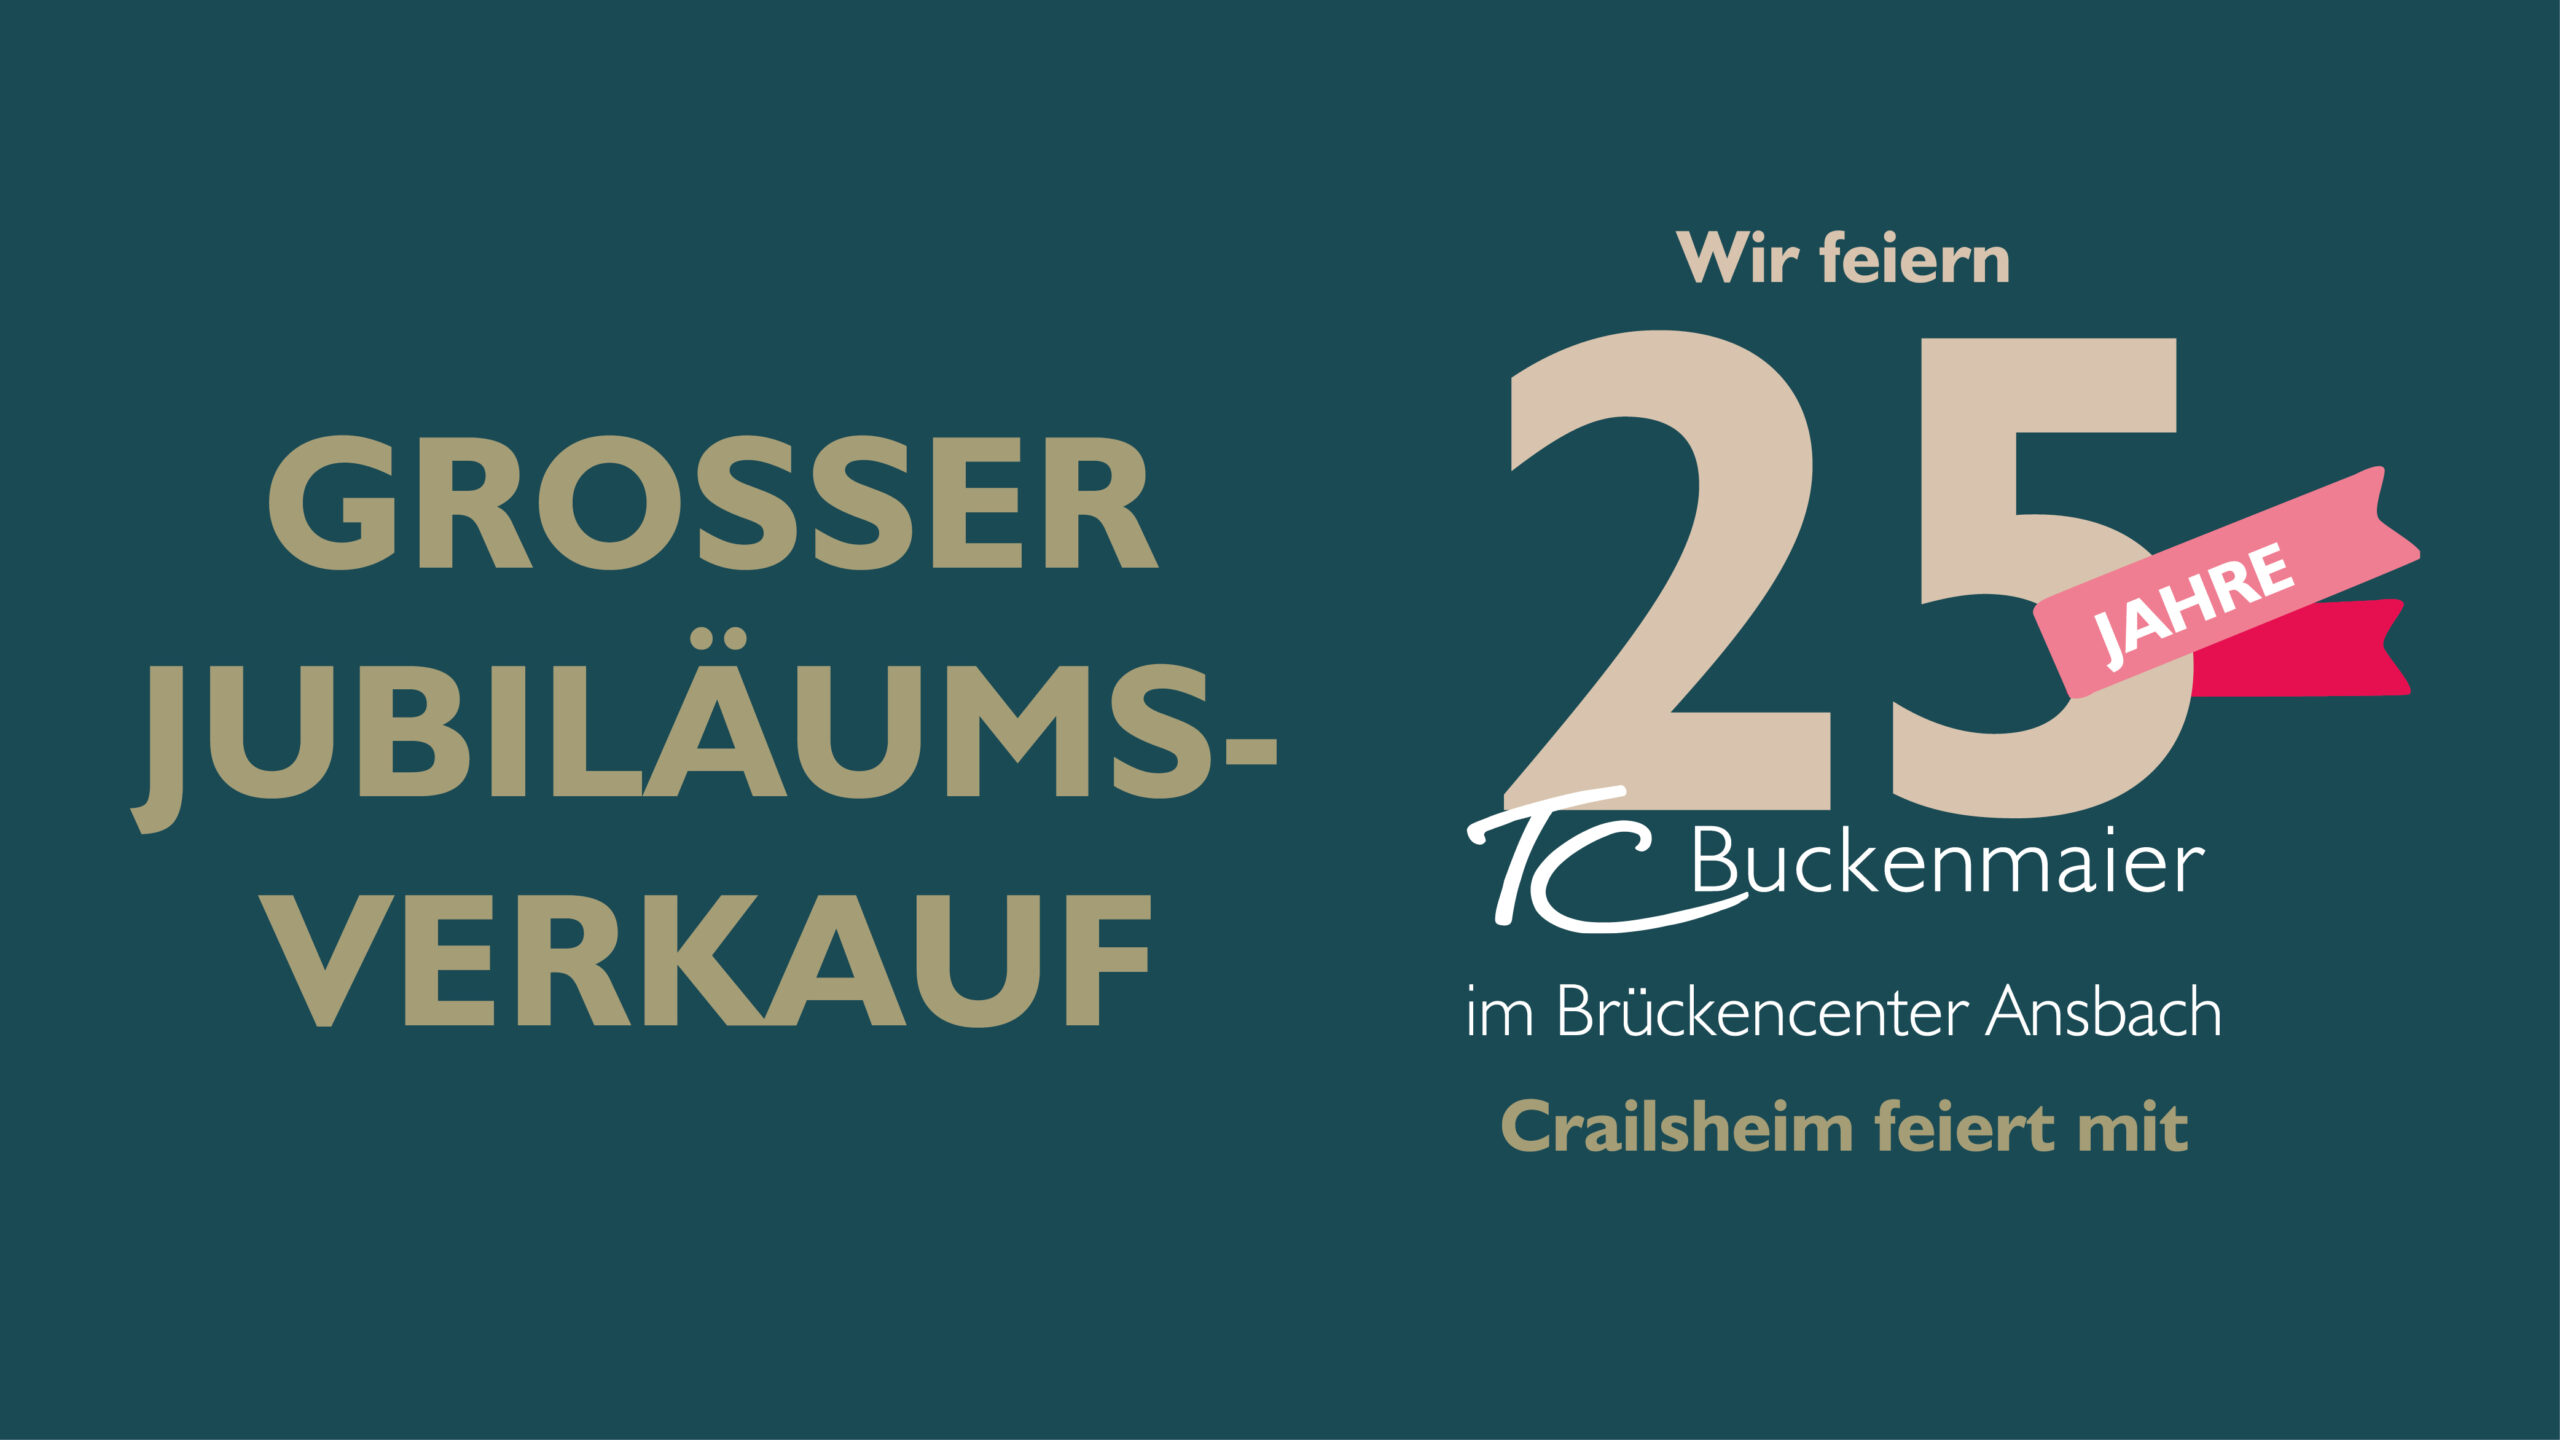 Wir feiern 25 Jahre TC im Brücken-Center Ansbach